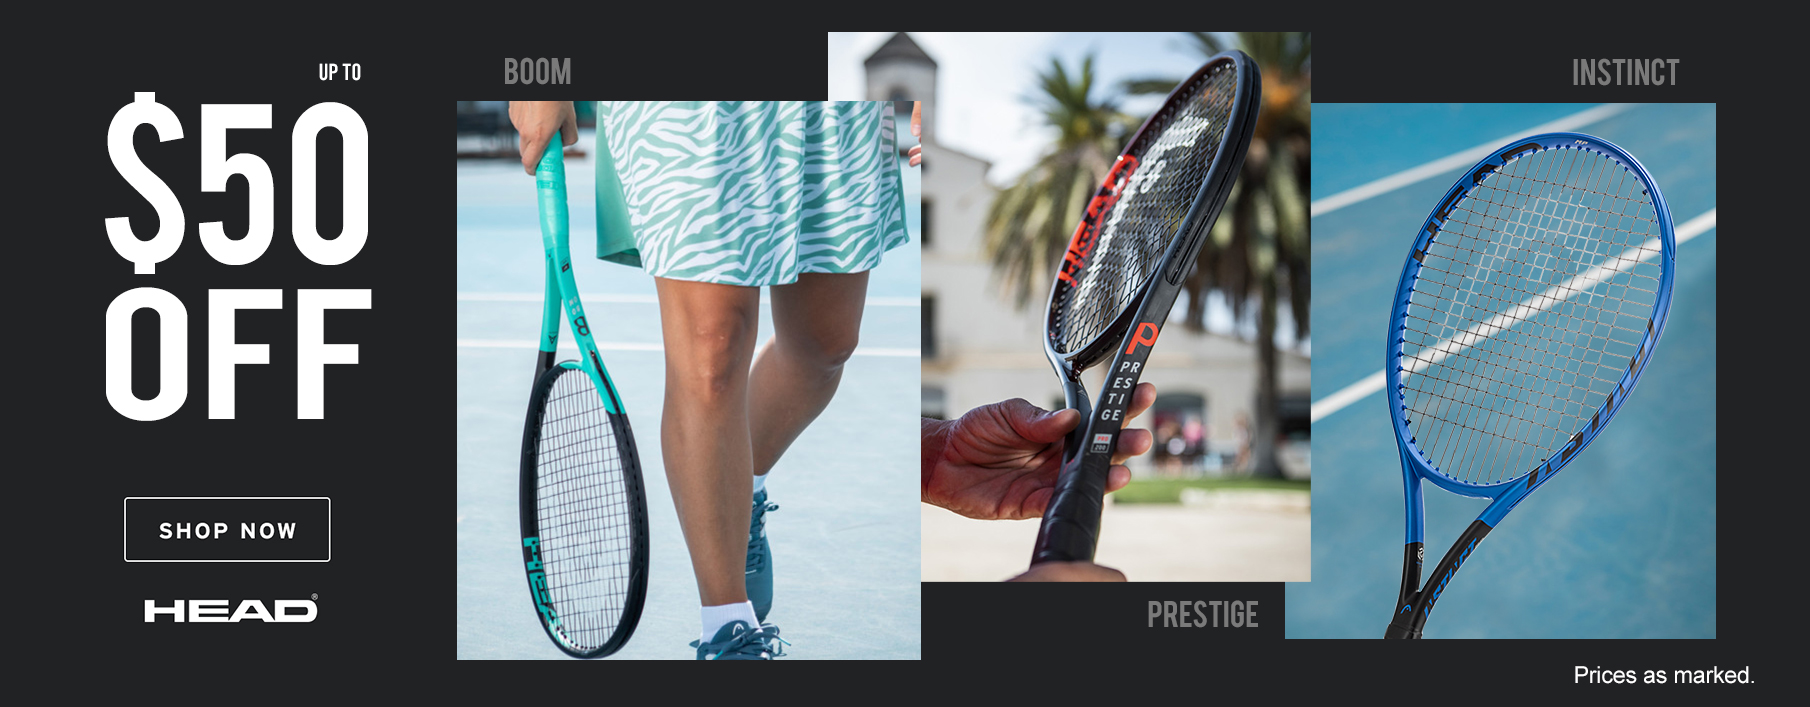 Tennis Equipment & Gear | Tennis Express